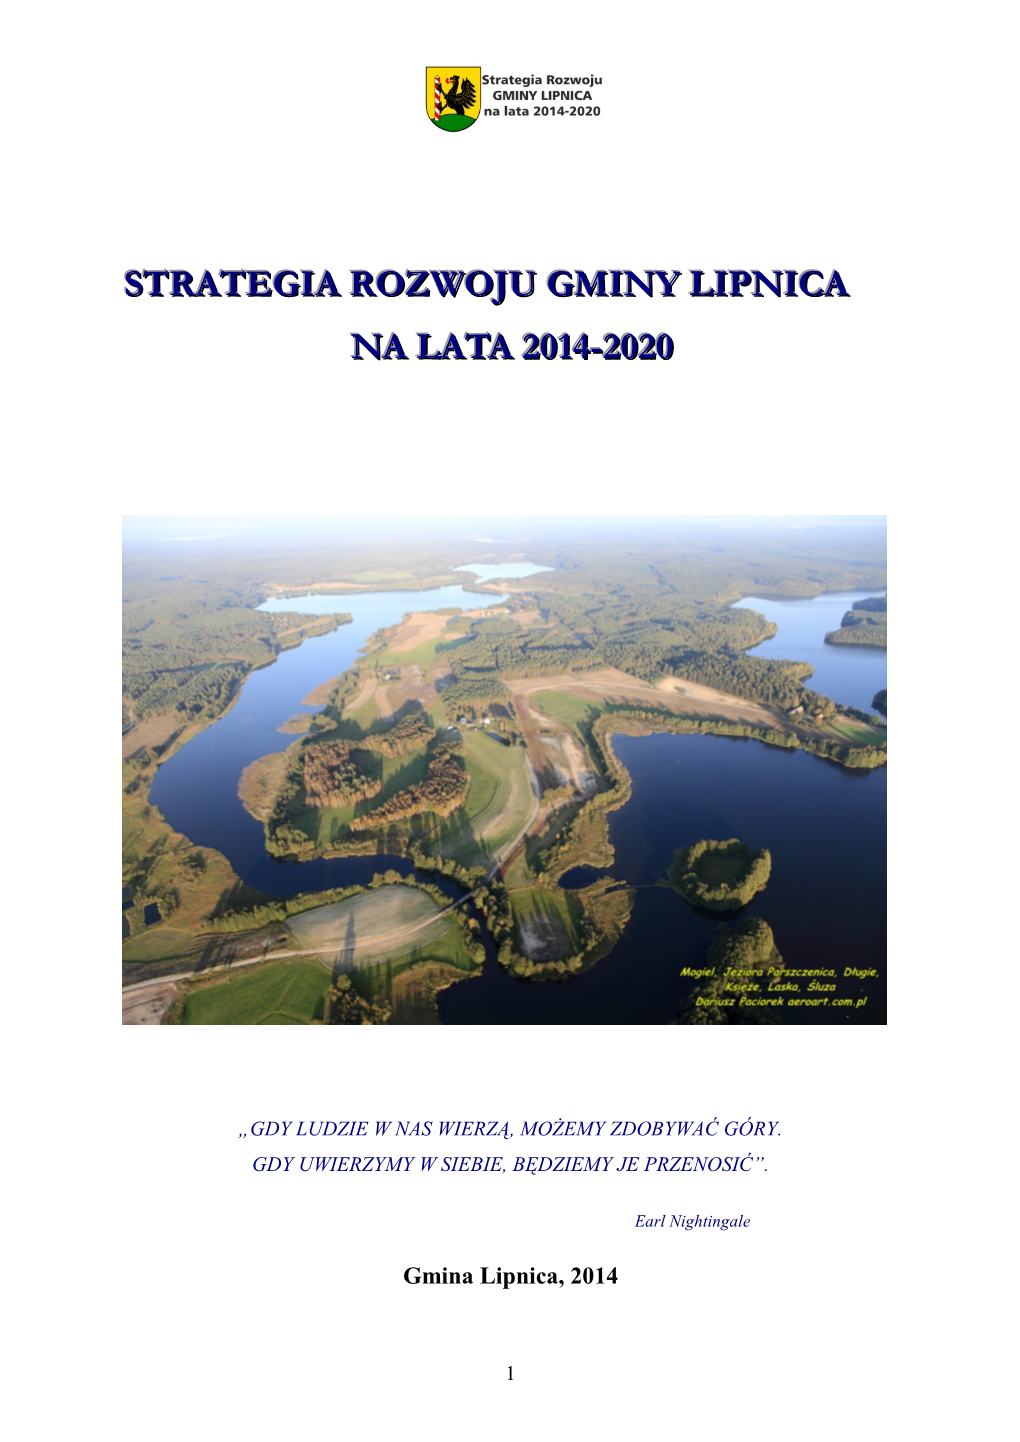 Strategia Rozwoju Gminy Lipnica 2014-2020